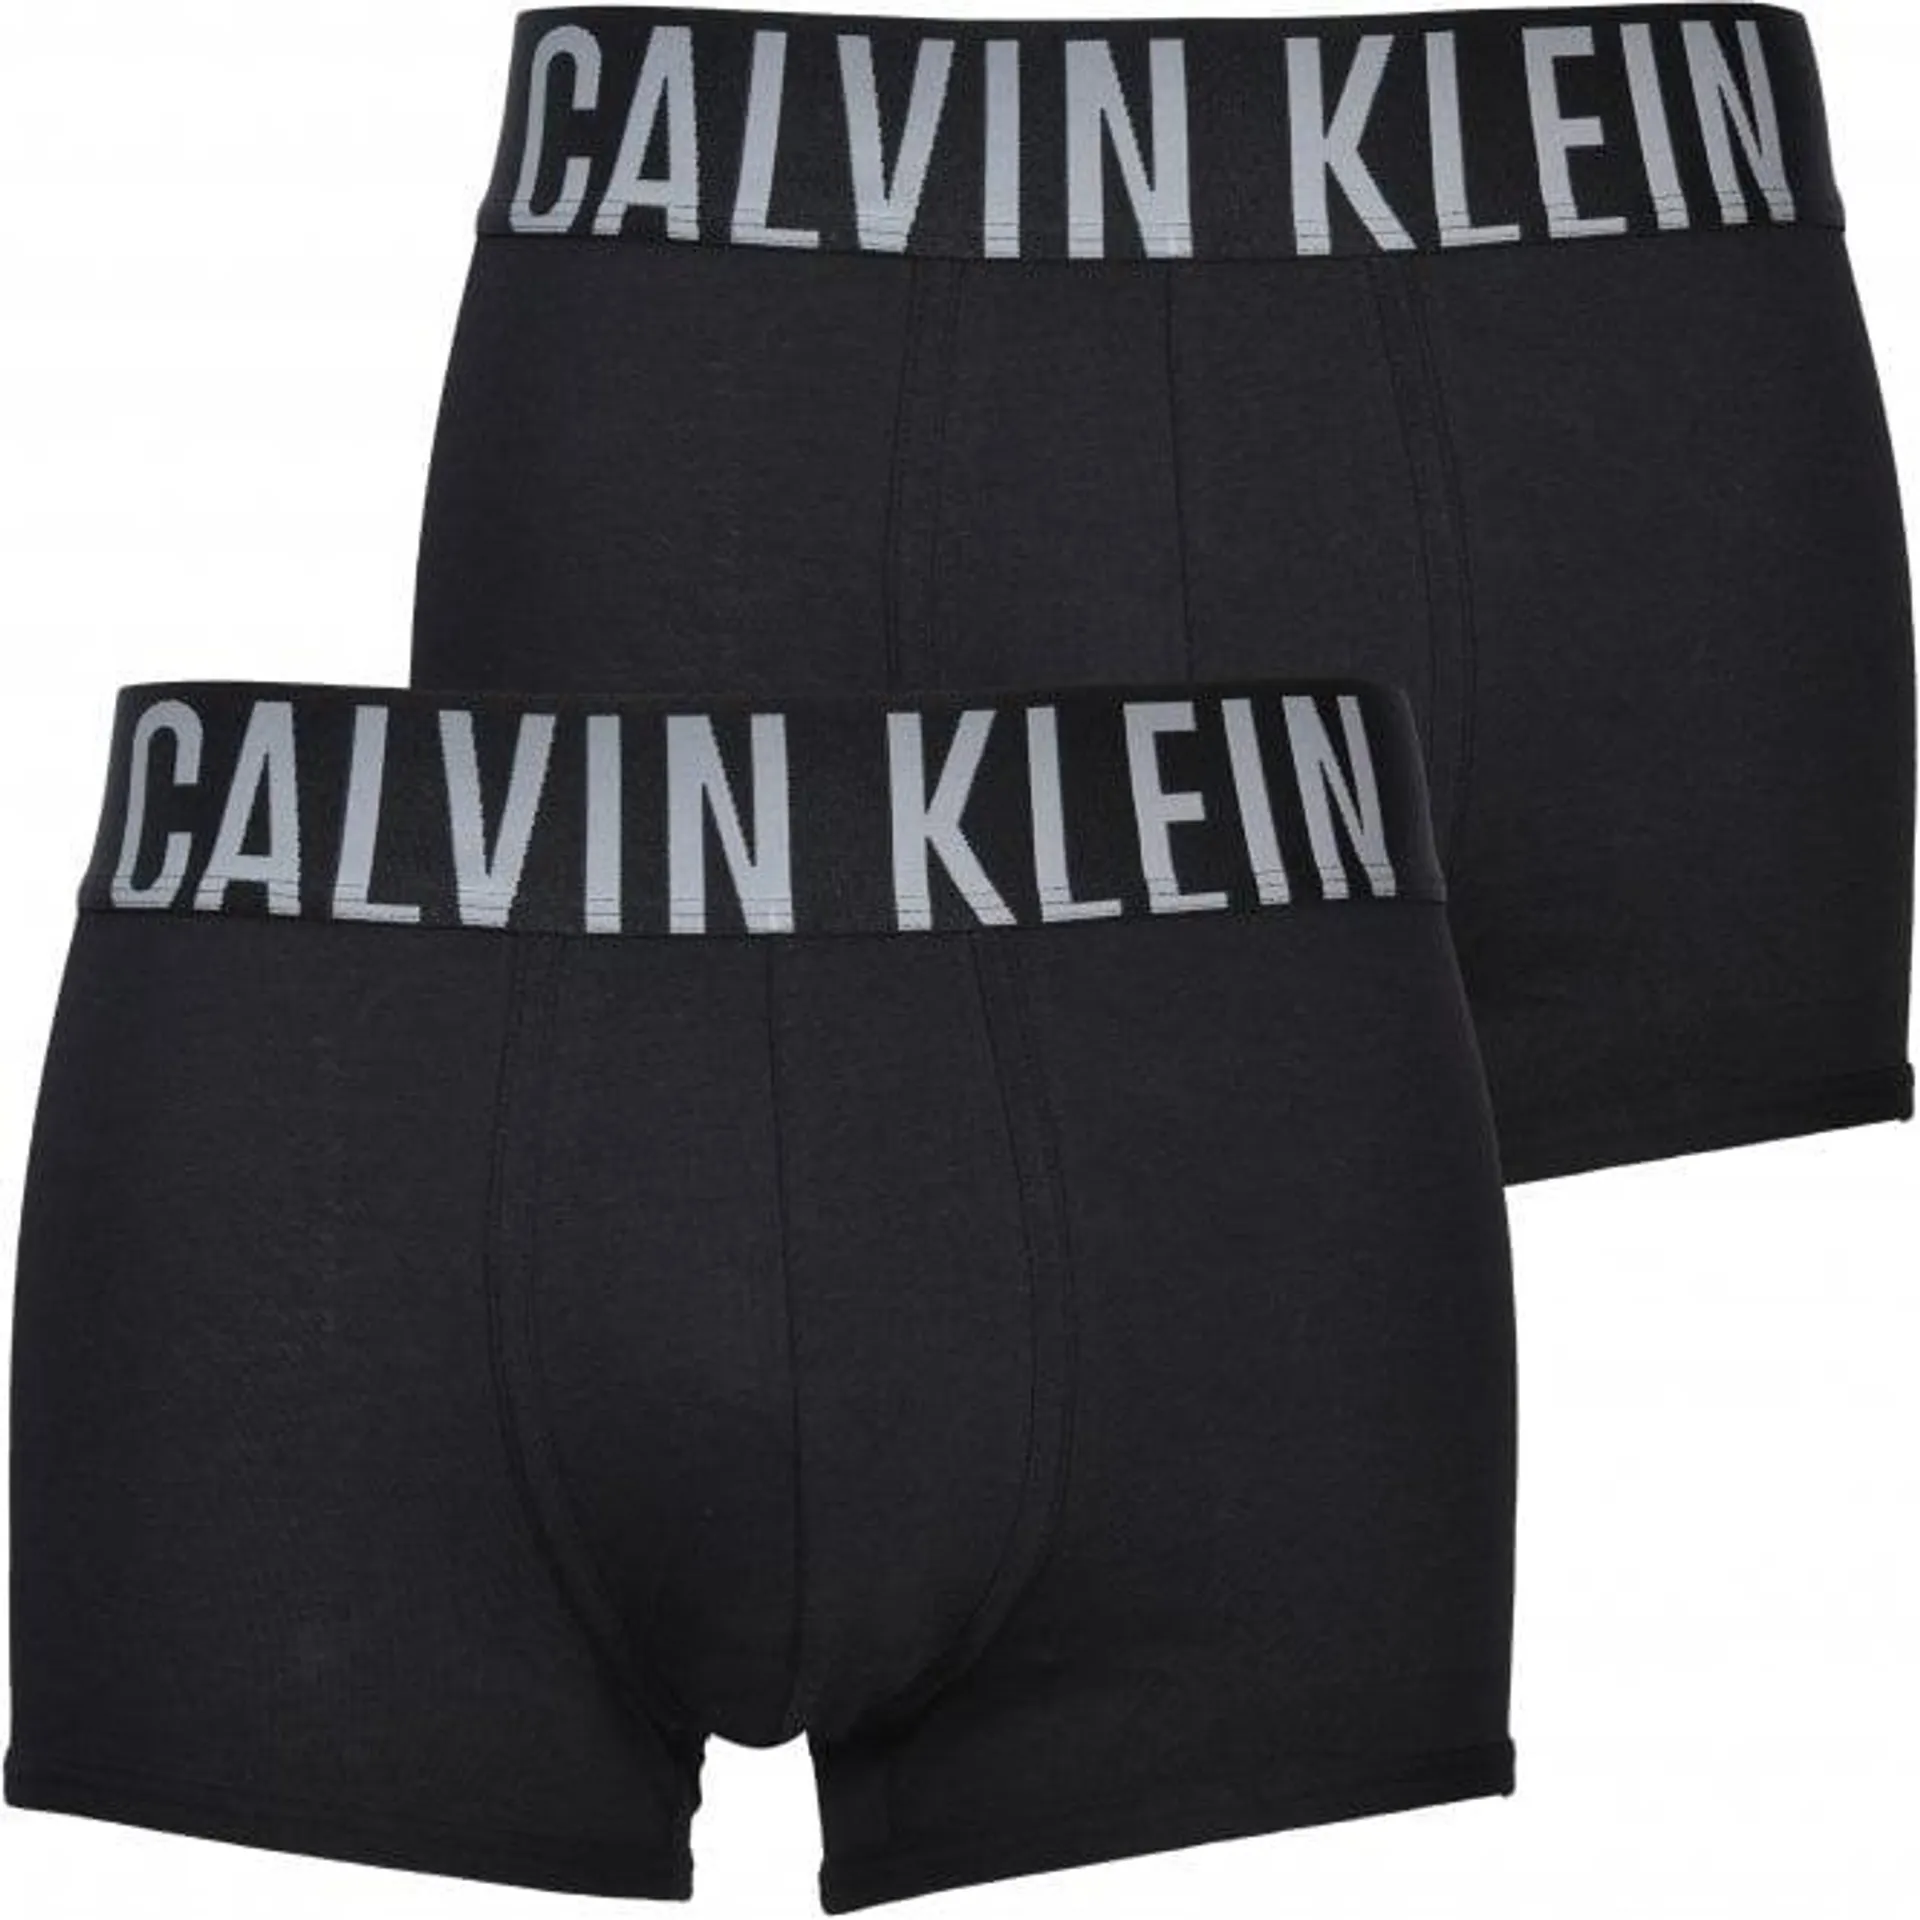 Calvin Klein 2-Pack Intense Power Boxer Trunks, Black/silver